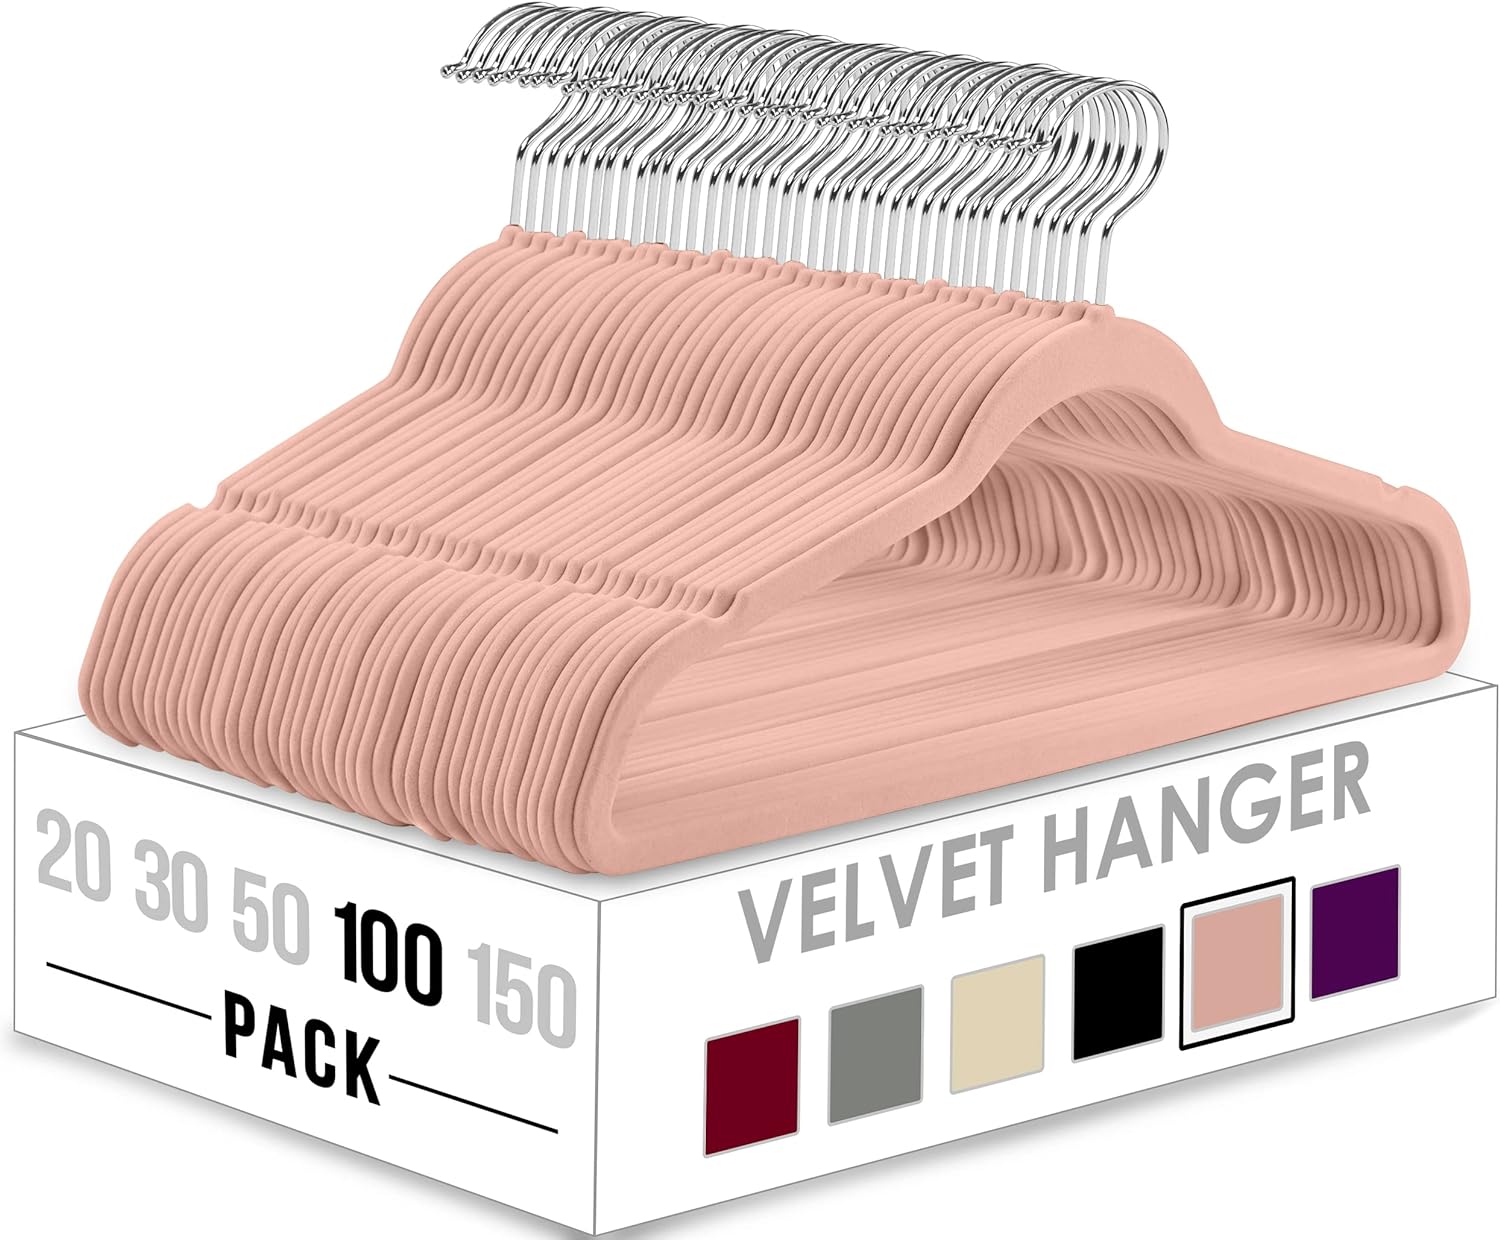  Velvet Hangers 50 Pack - Extra Strong to Hold Heavy